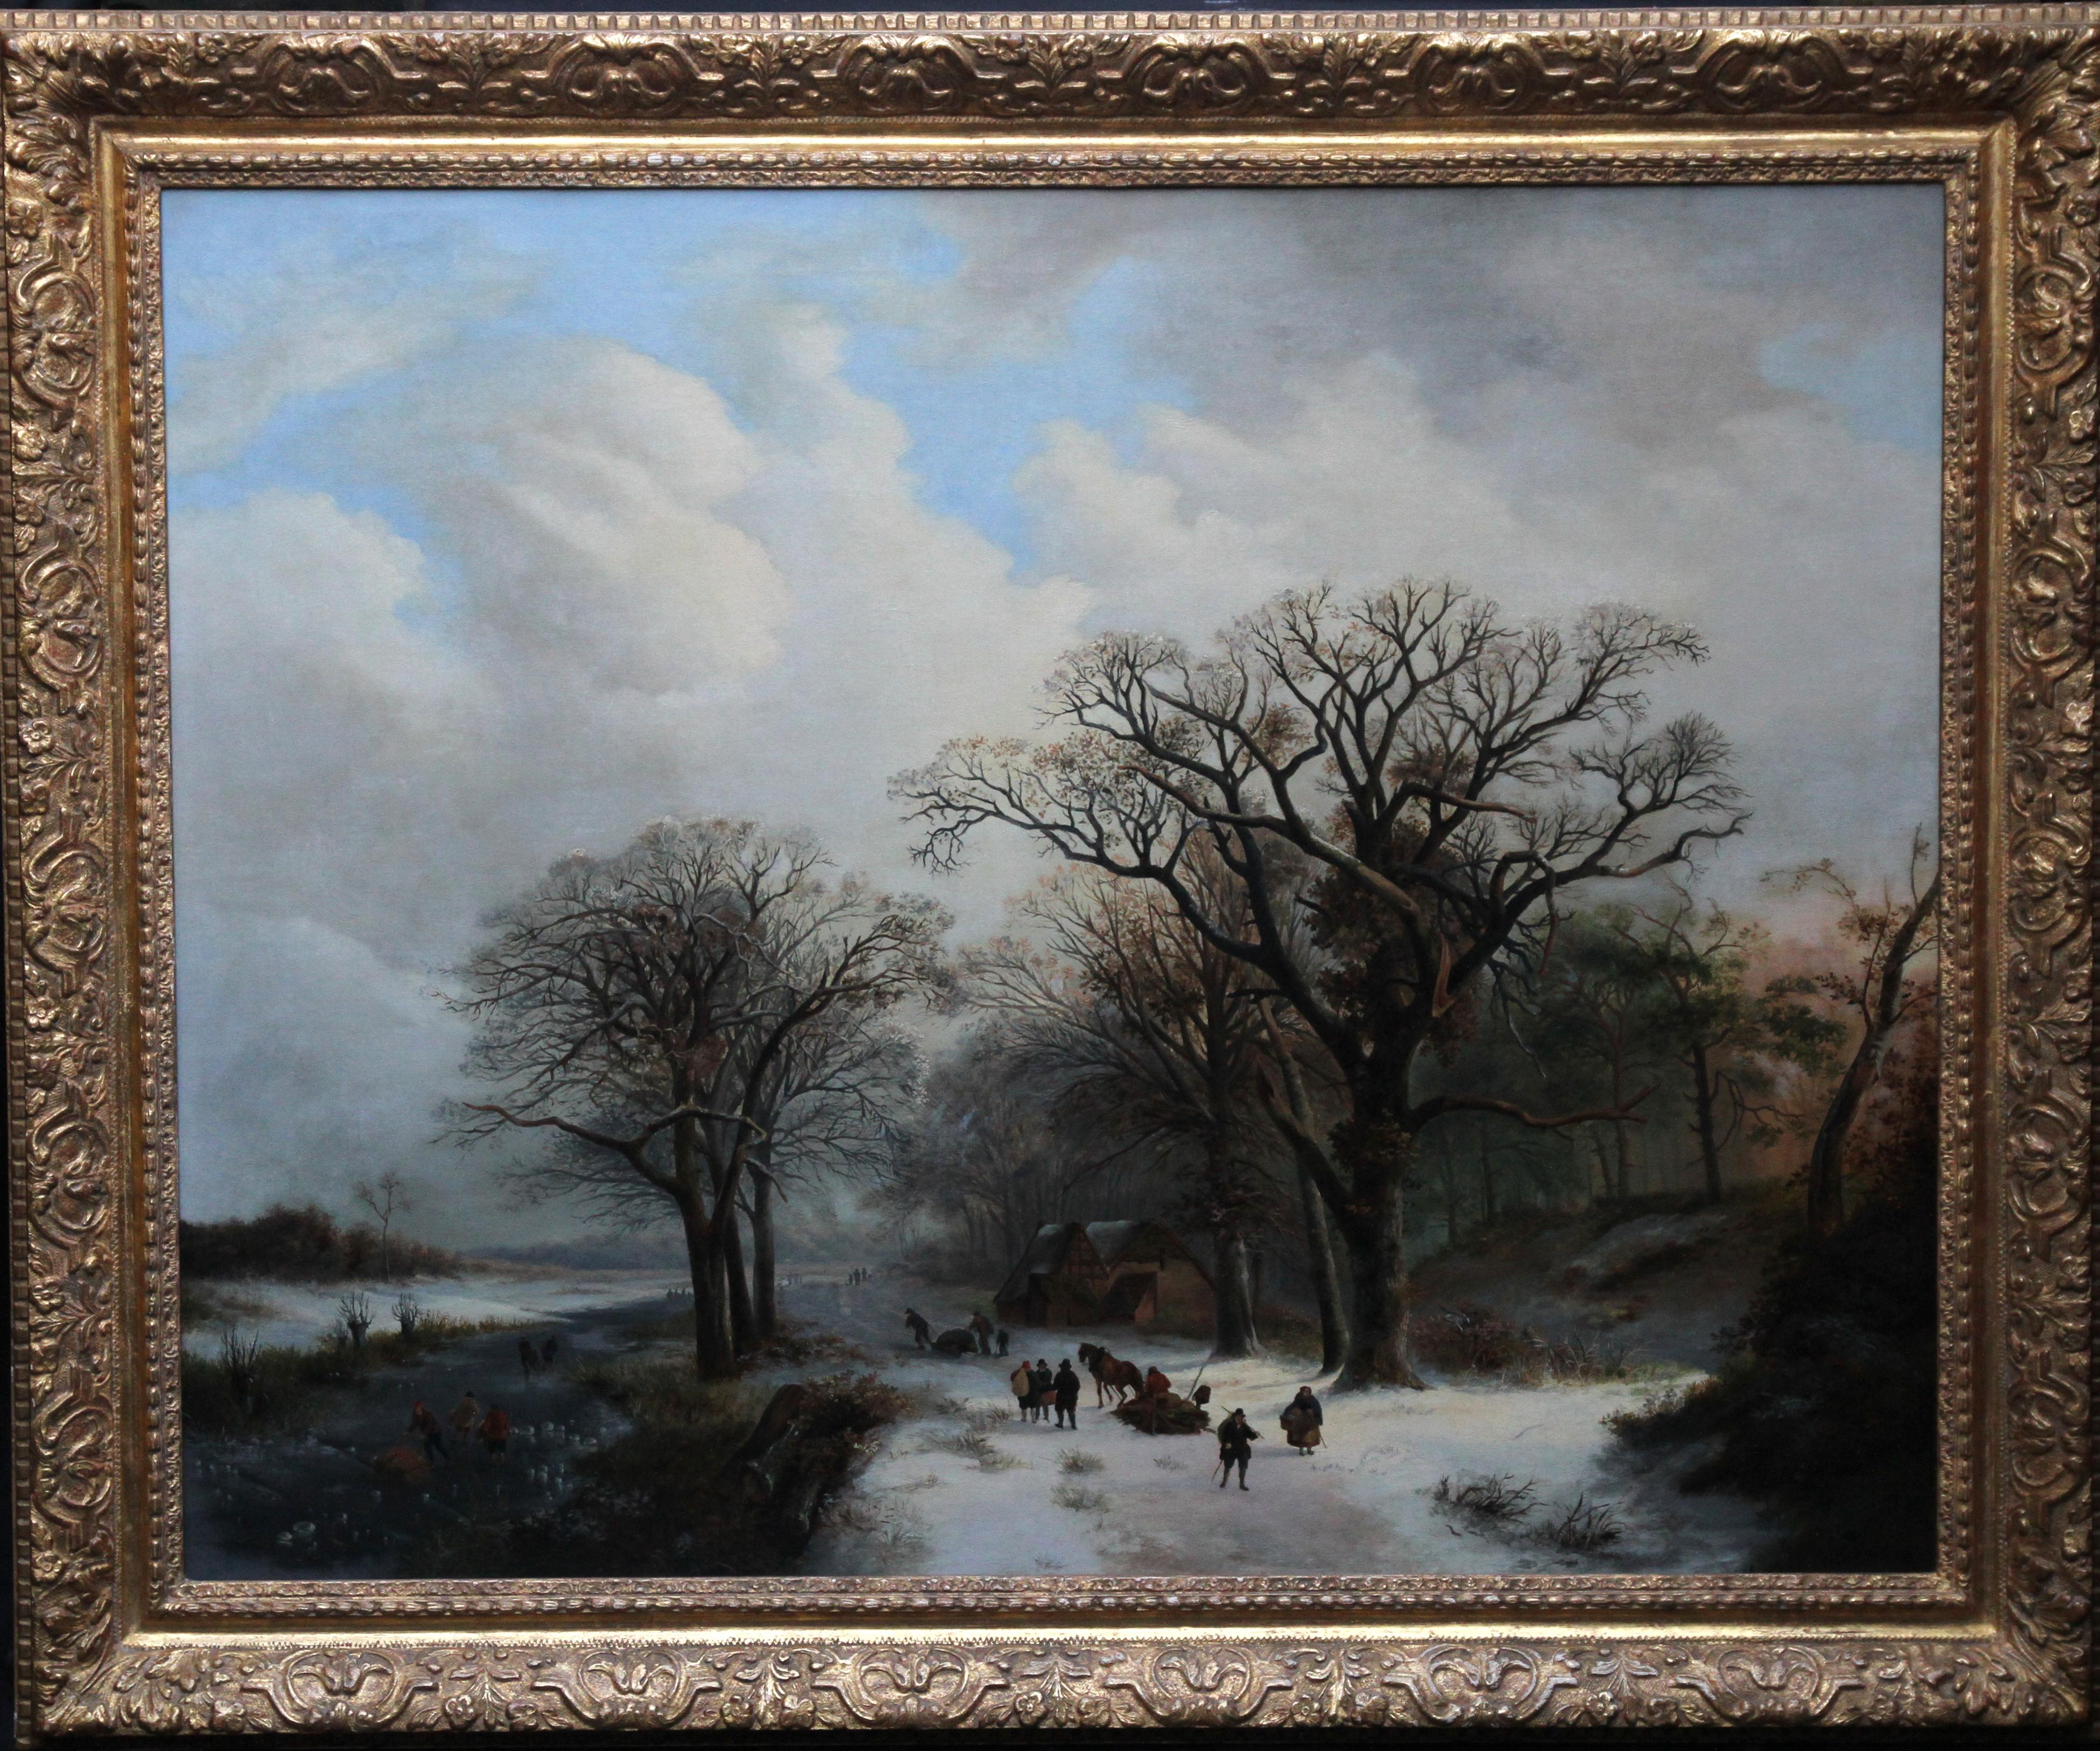 Everardus Mirani Landscape Painting - Dutch Winter Landscape -  Dutch Golden Age art Romantic landscape oil painting 